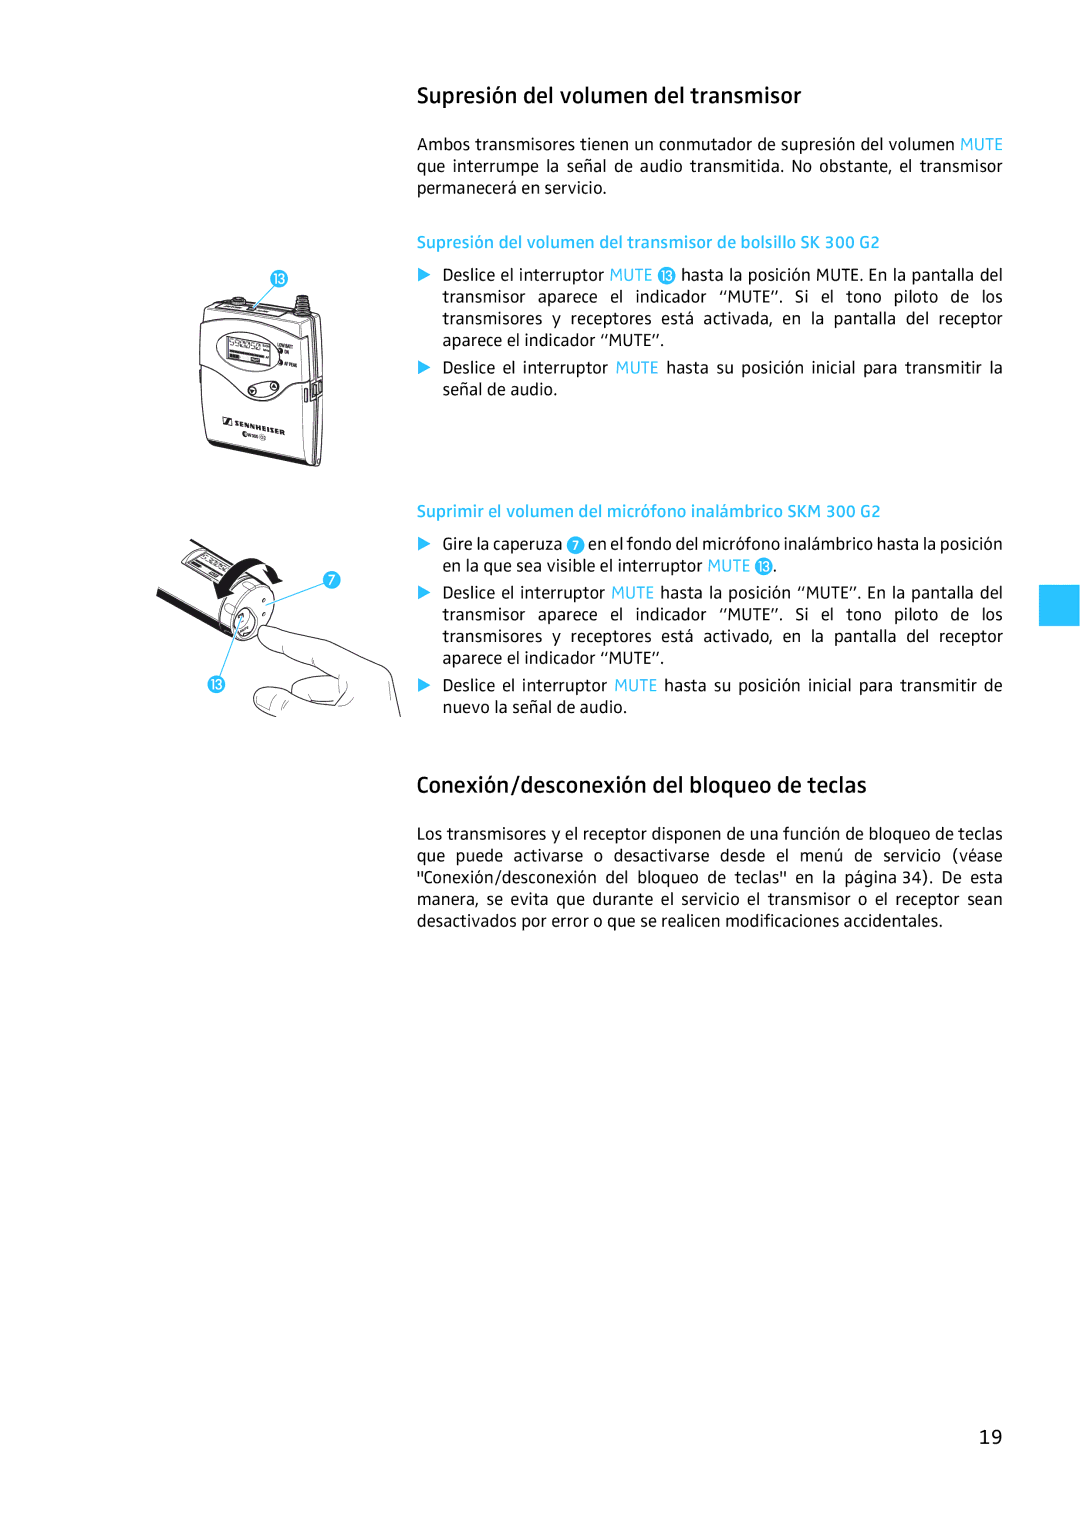 Sennheiser EW 300 G2 manual Supresión del volumen del transmisor, Conexión/desconexión del bloqueo de teclas 